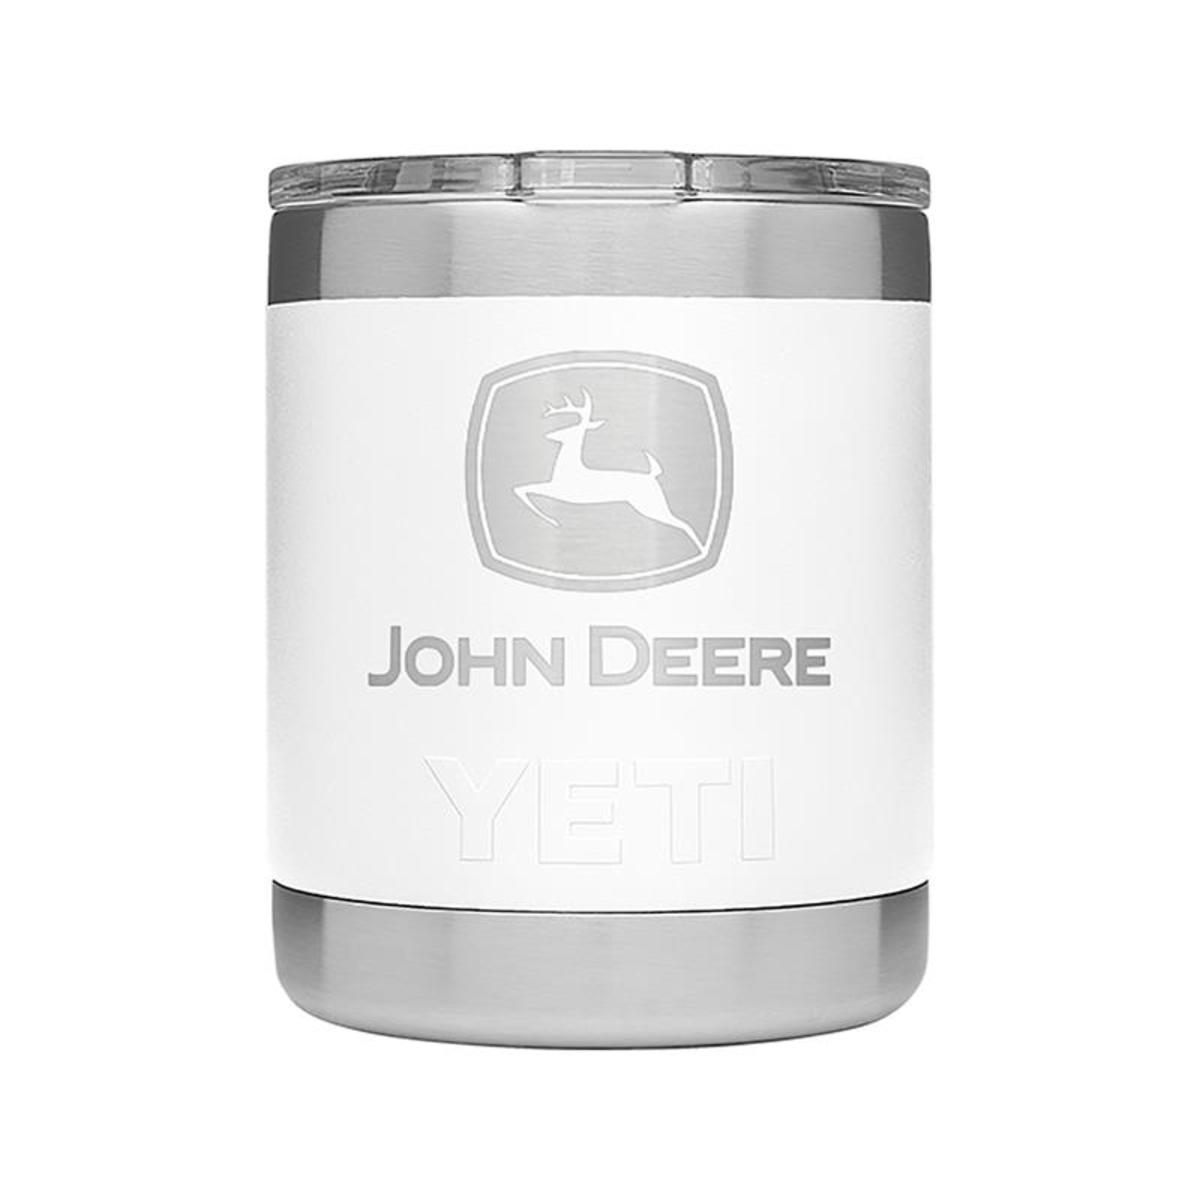 John Deere Yeti 26 oz Bottle (White) at BTI Direct